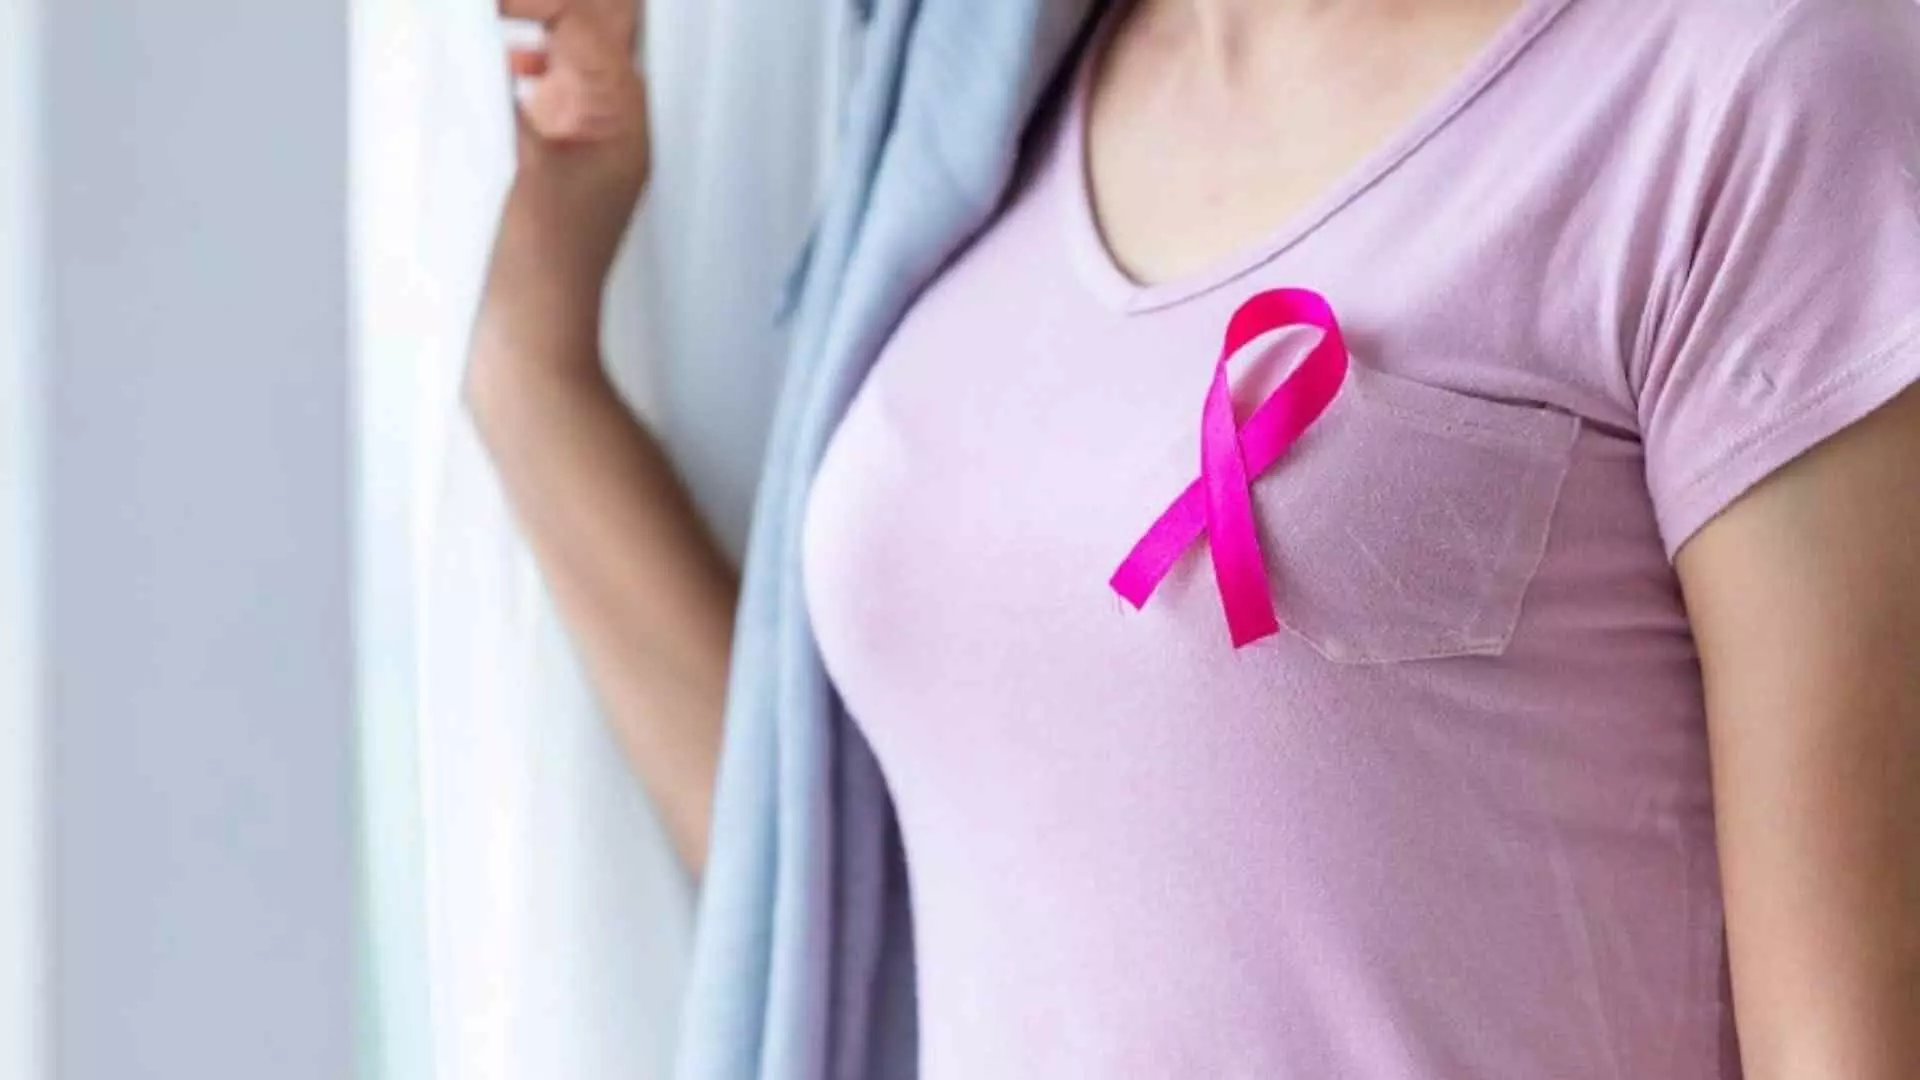 #WorldCancerDay : स्तनांचा कॅन्सर होण्याची कारणे काय आहेत ?